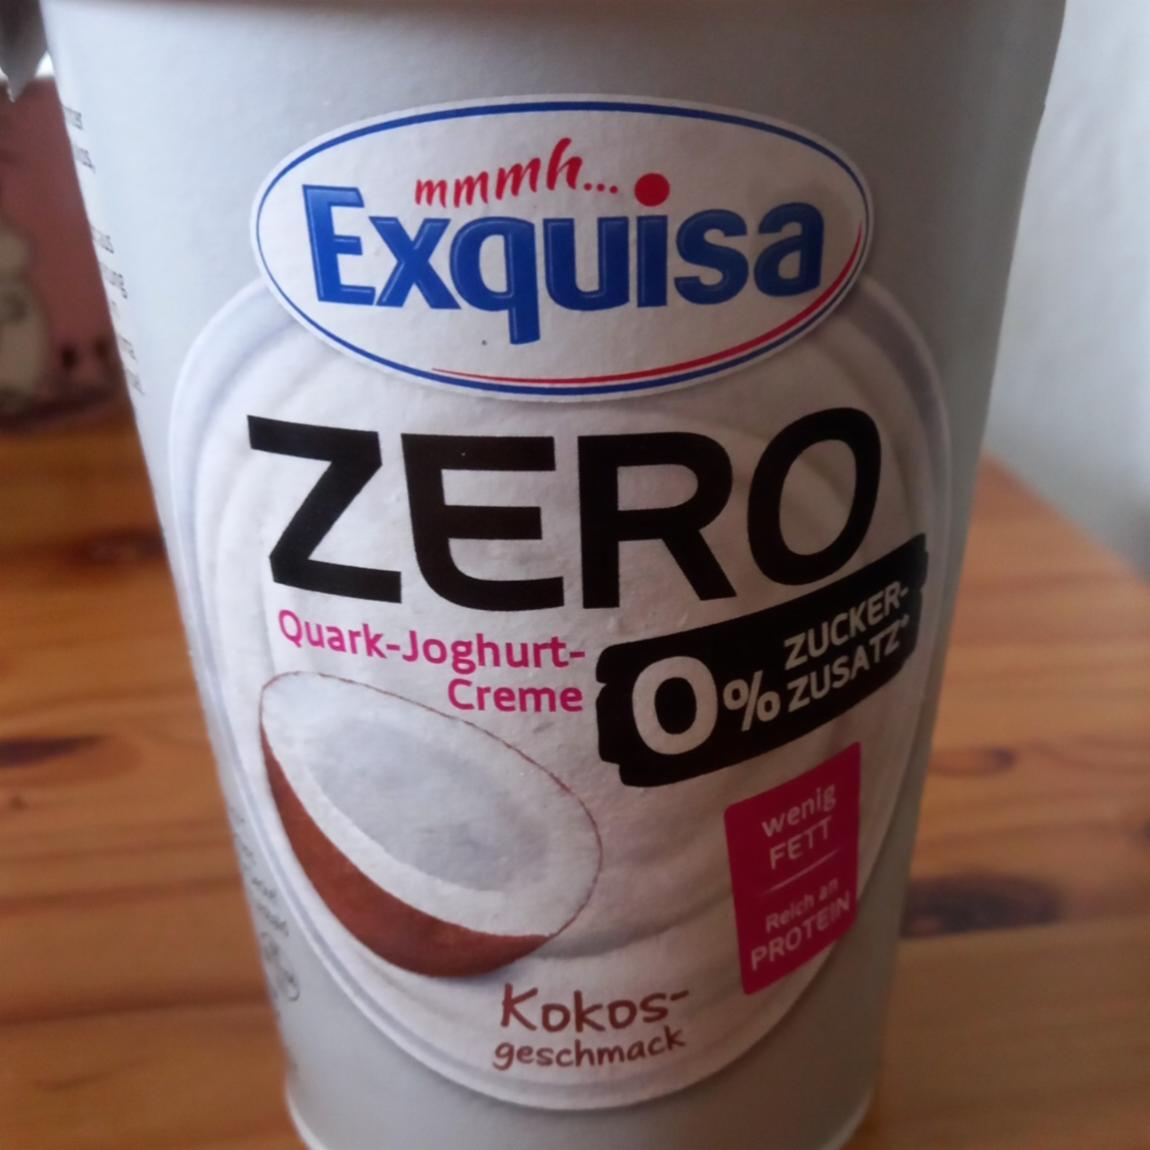 Фото - Zero quark-joghurt-creme kokos Exquisa